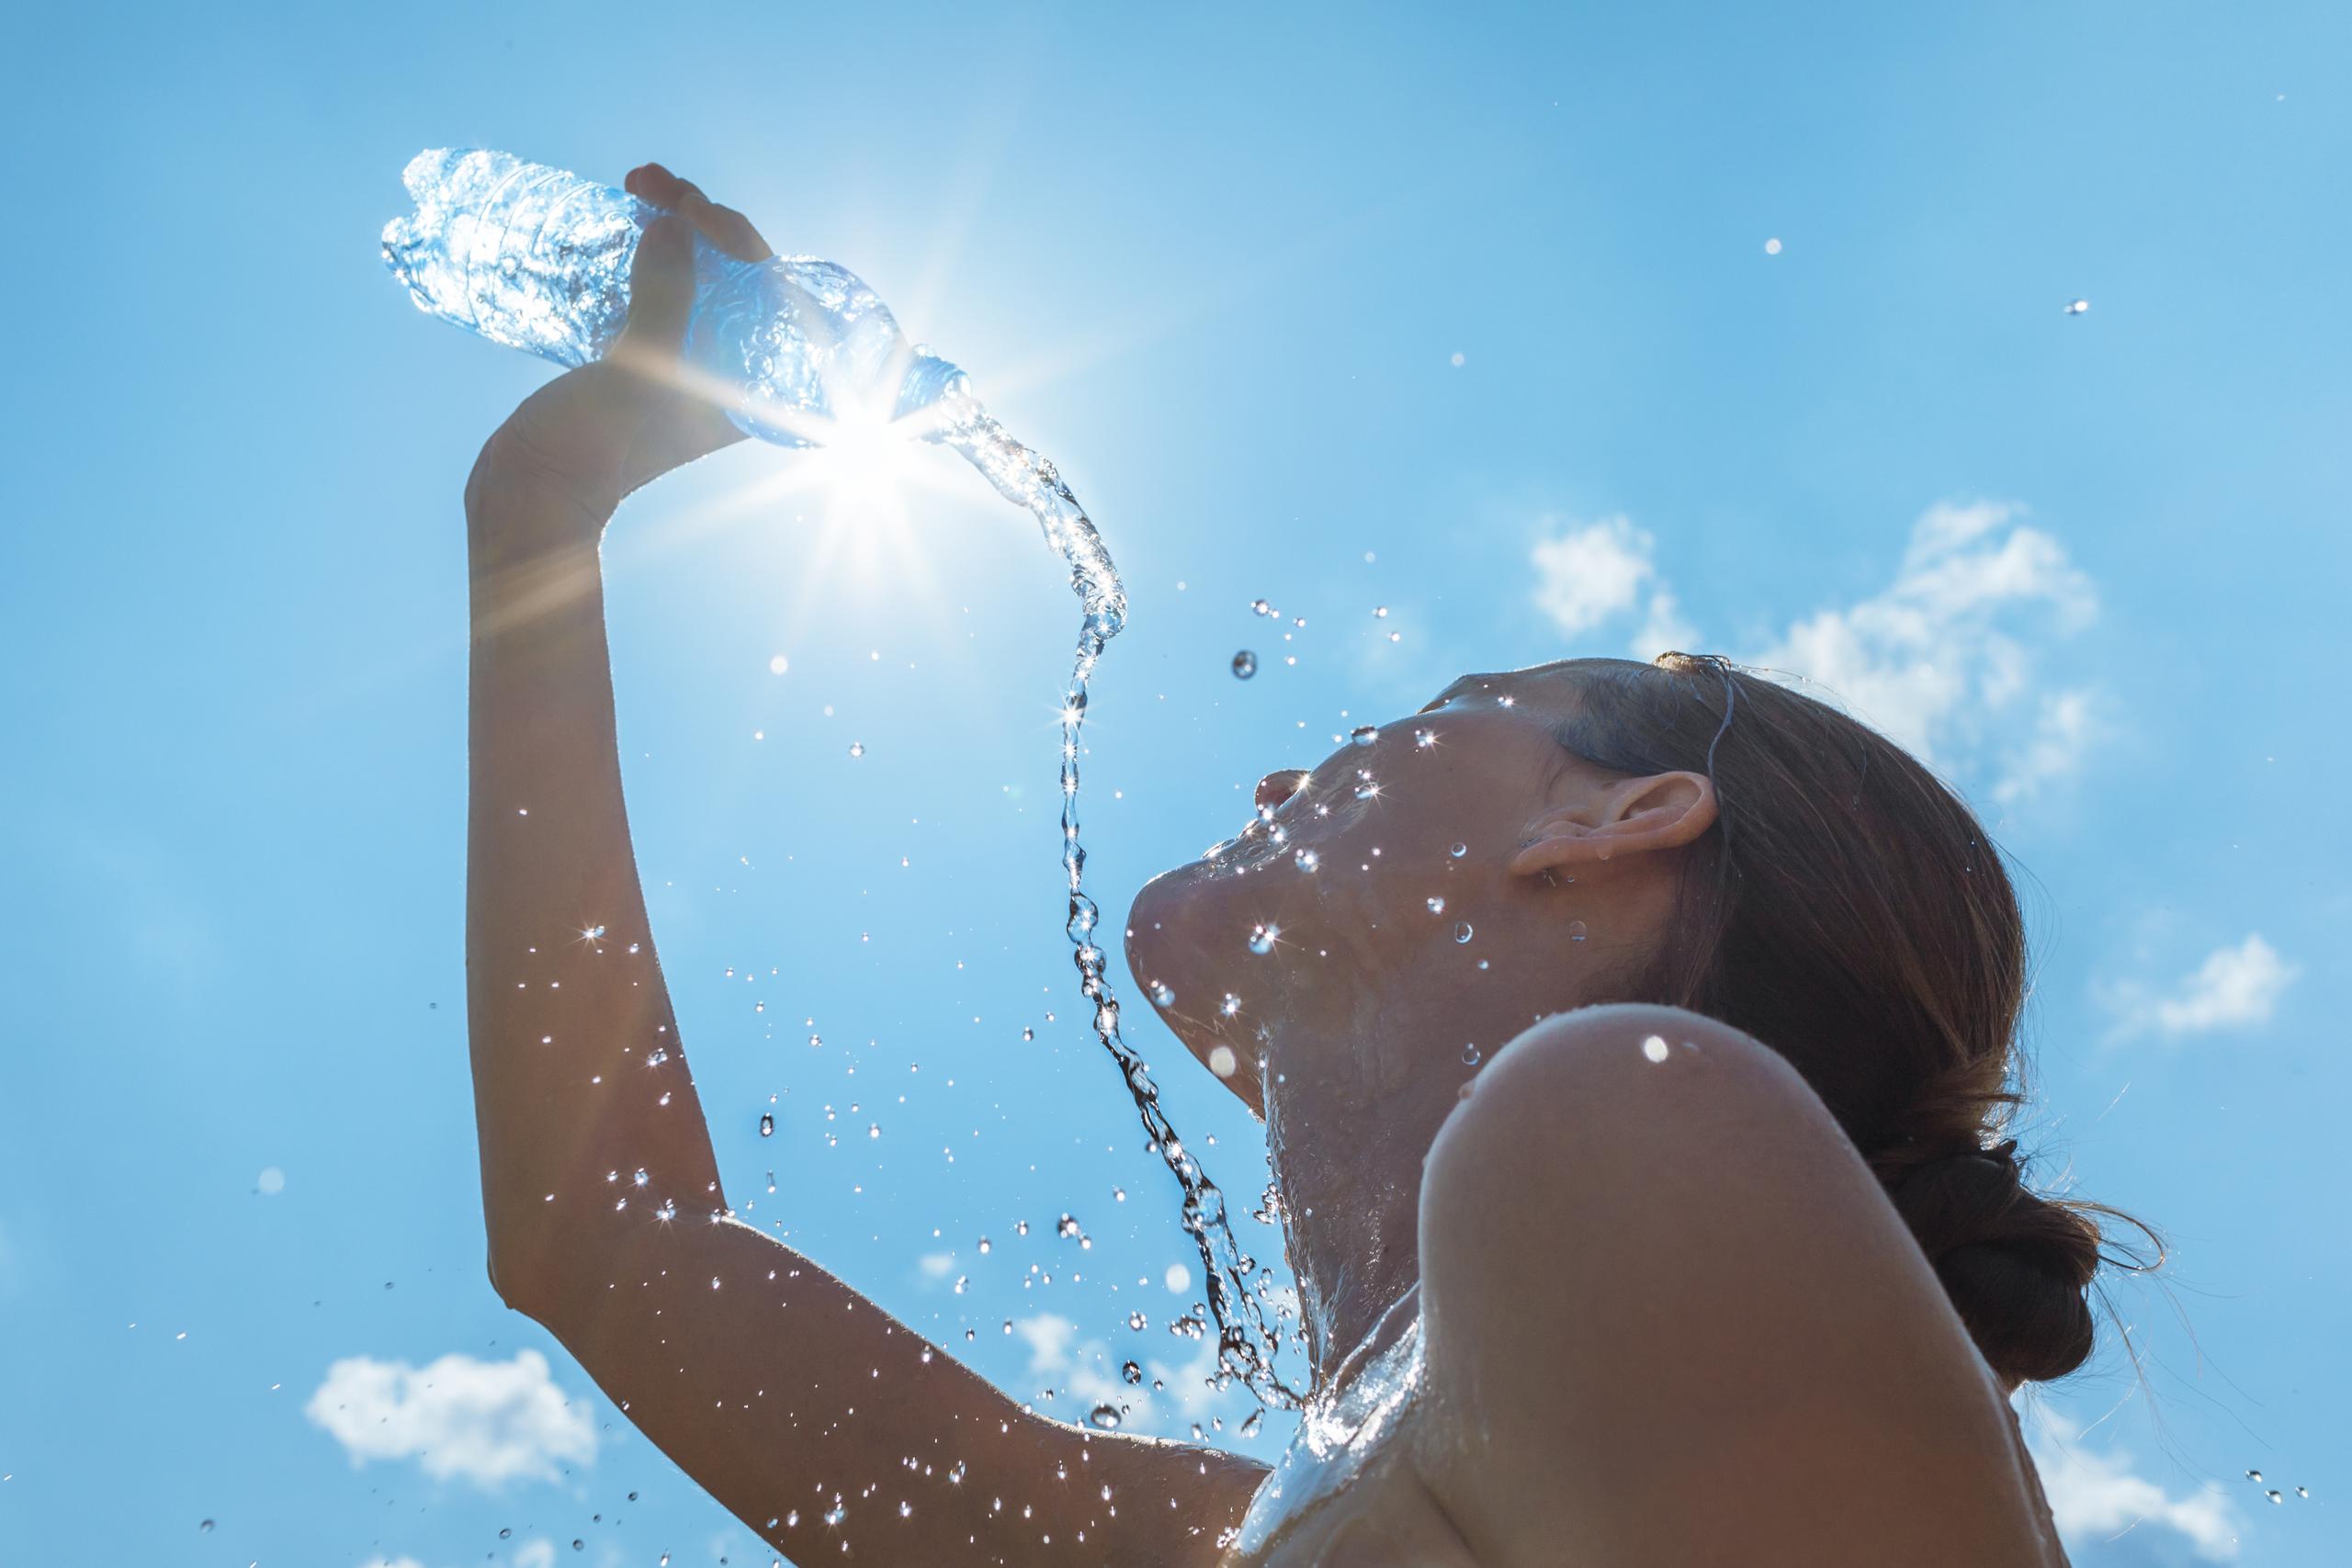 Se recomienda limitar las actividades al aire libre con exposición directa al sol por prolongados periodos de tiempo e hidratarse constantemente.